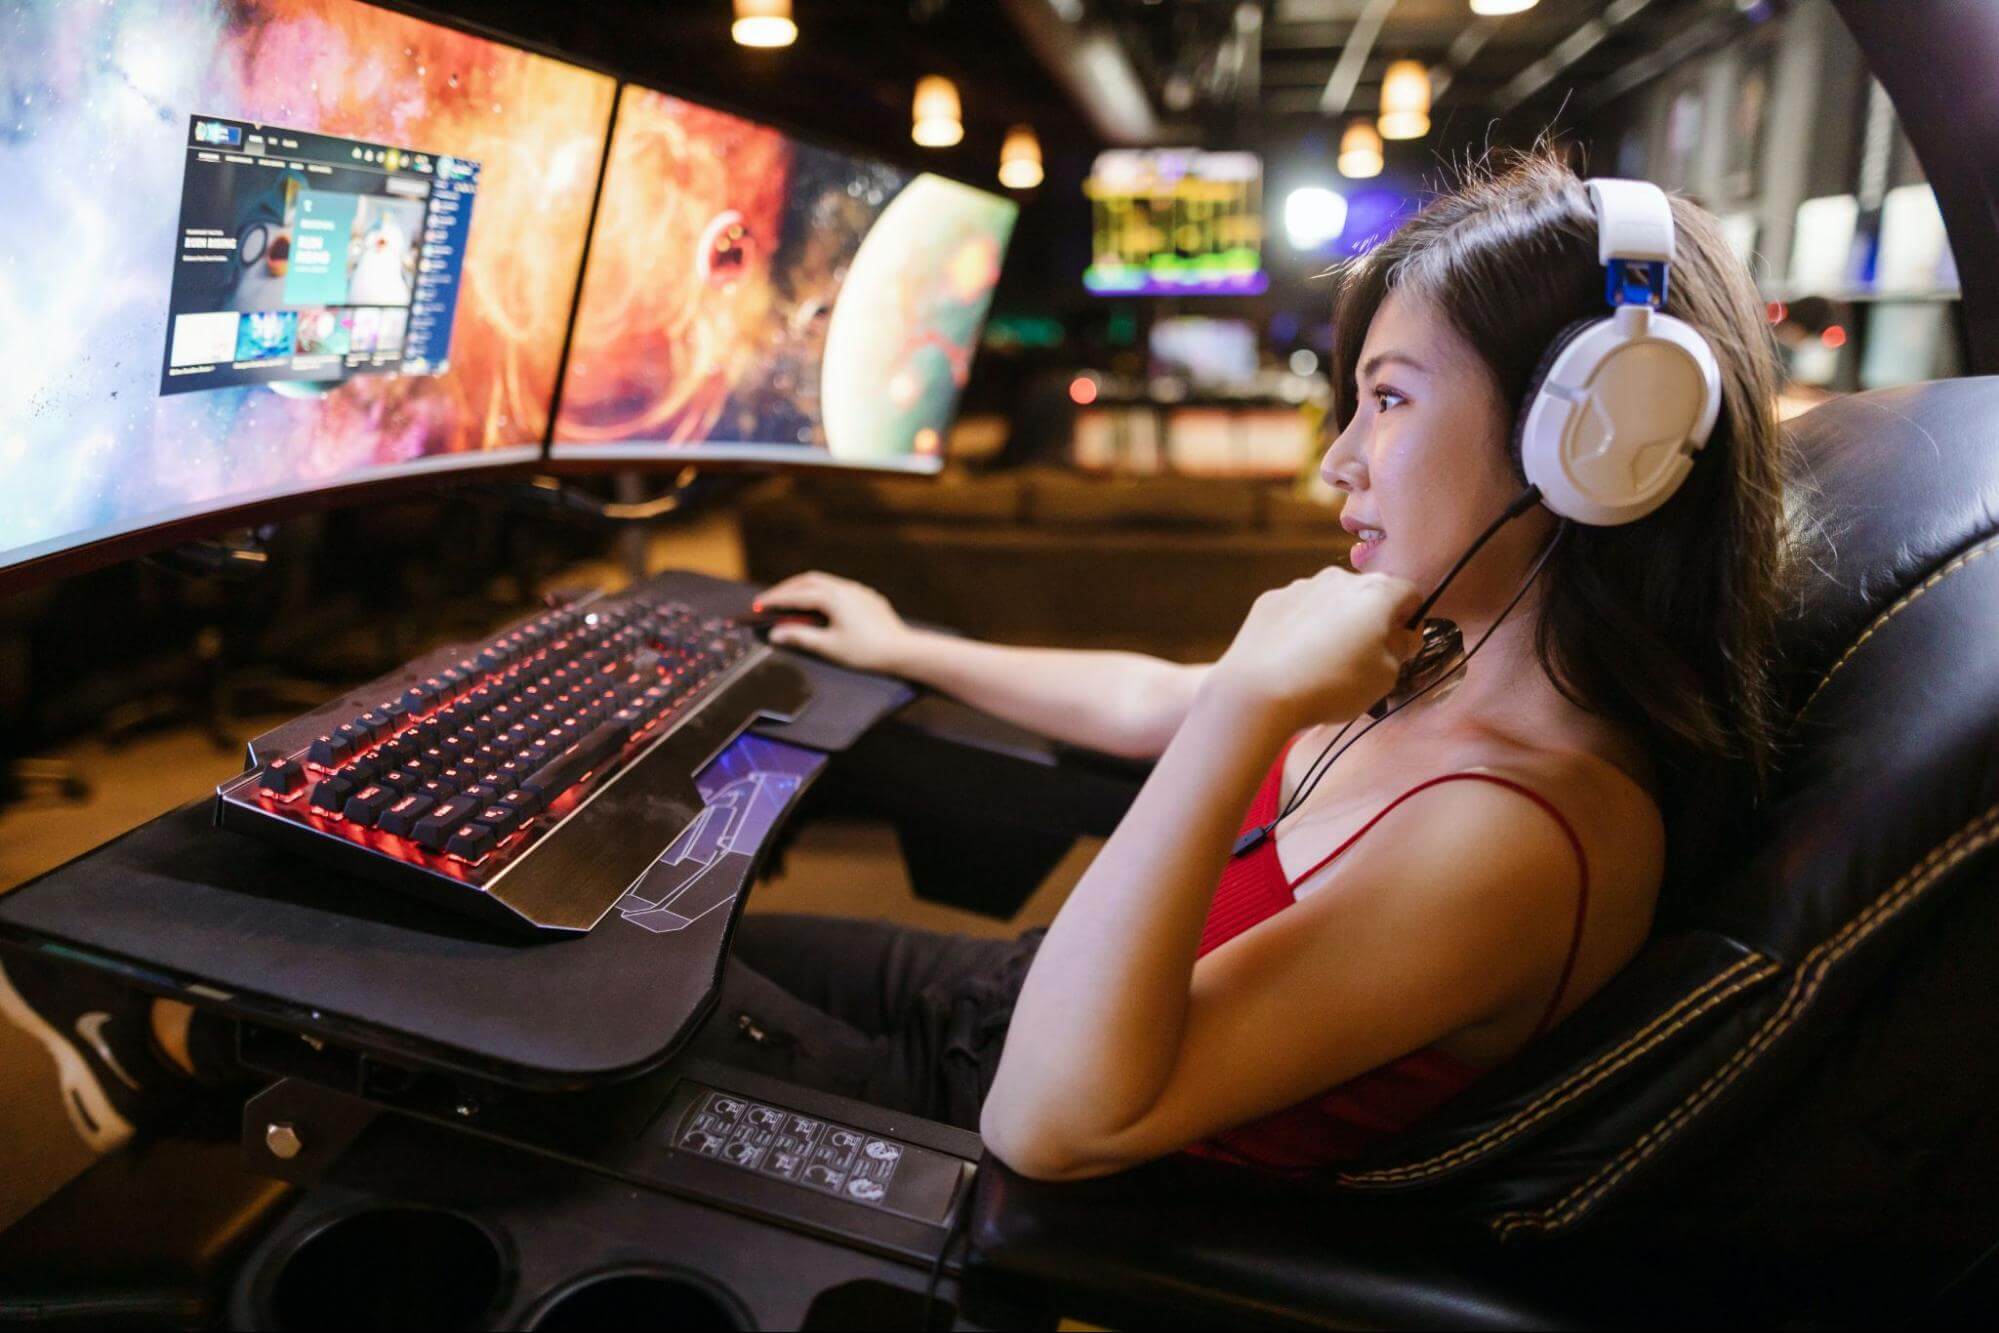 uma mulher que veste uma regata vermelha e usa fones de ouvido está sentada em uma cadeira gamer, à frente de um setup com diversos monitores e um teclado com luzes coloridas.